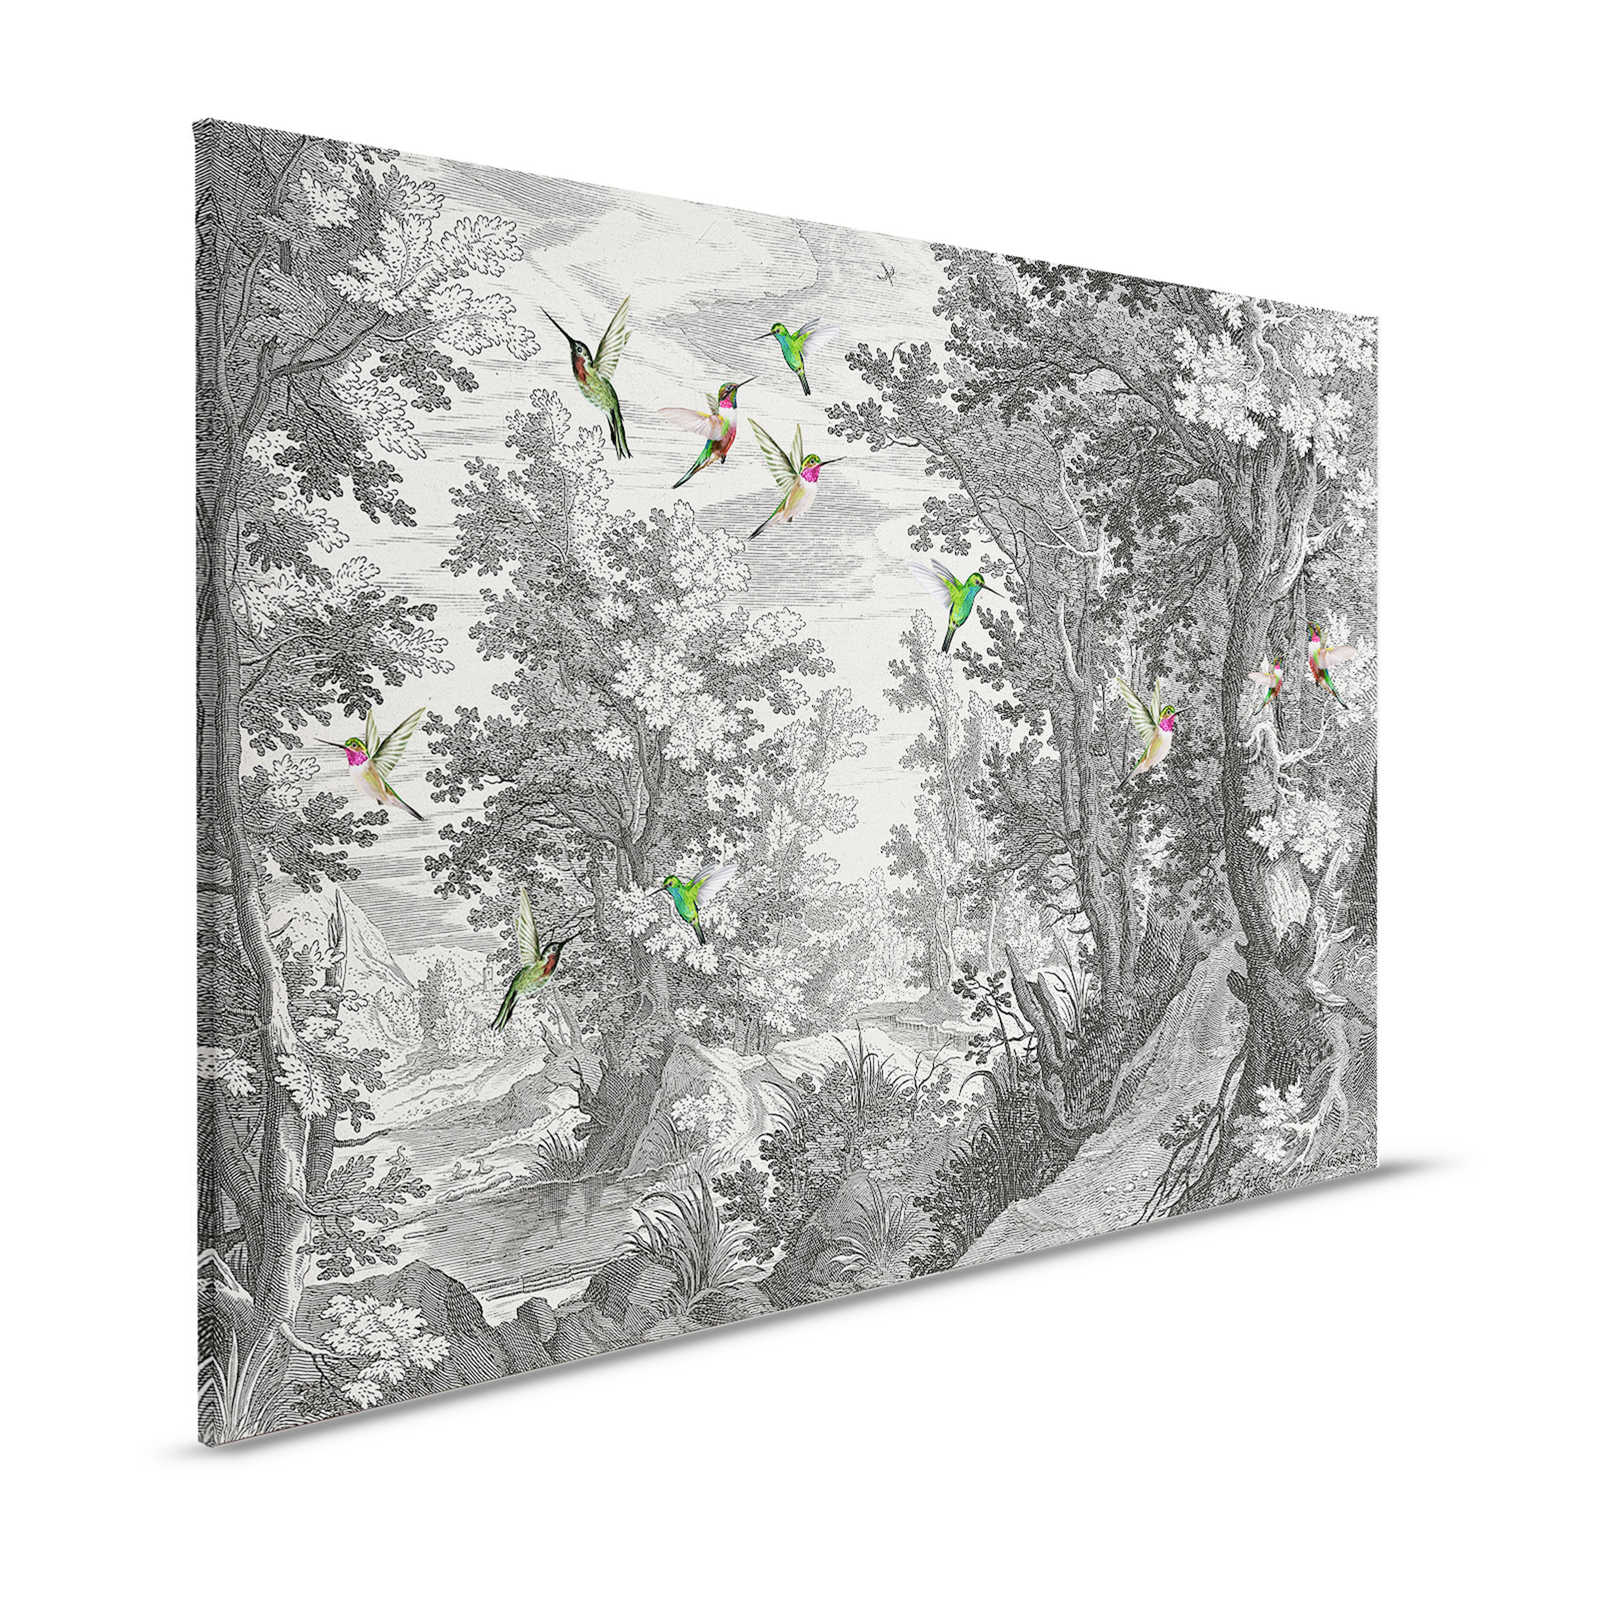 Fancy Forest 1 - Stampa su tela del paesaggio con uccelli - 1,20 m x 0,80 m
